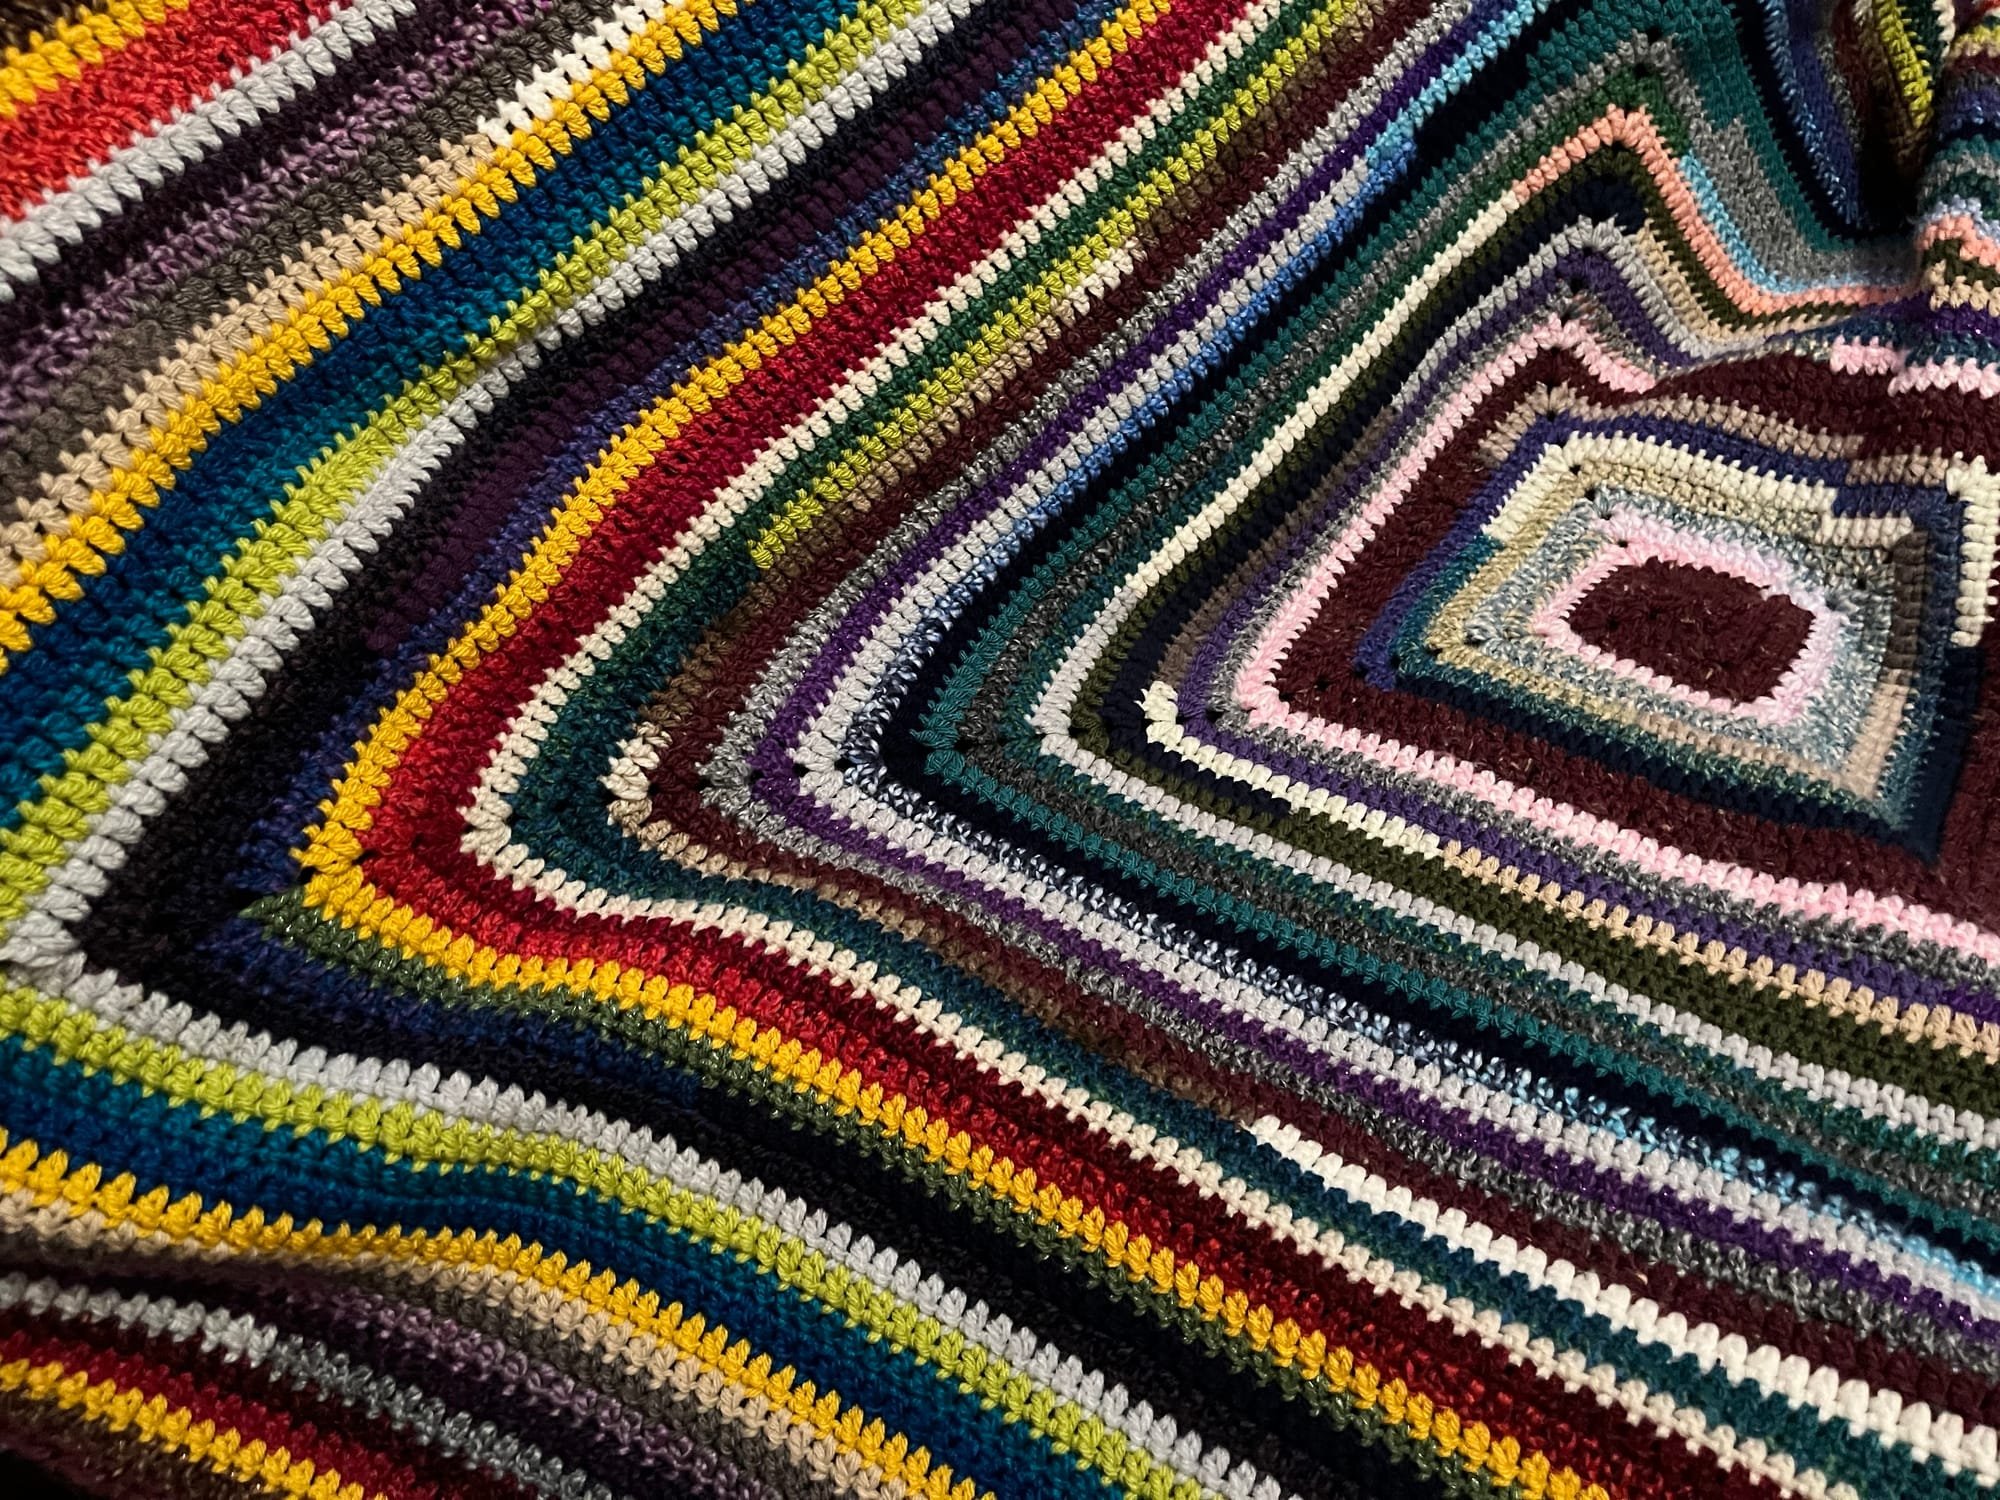 Crochet scrap granny square blanket 150cm x 150cm